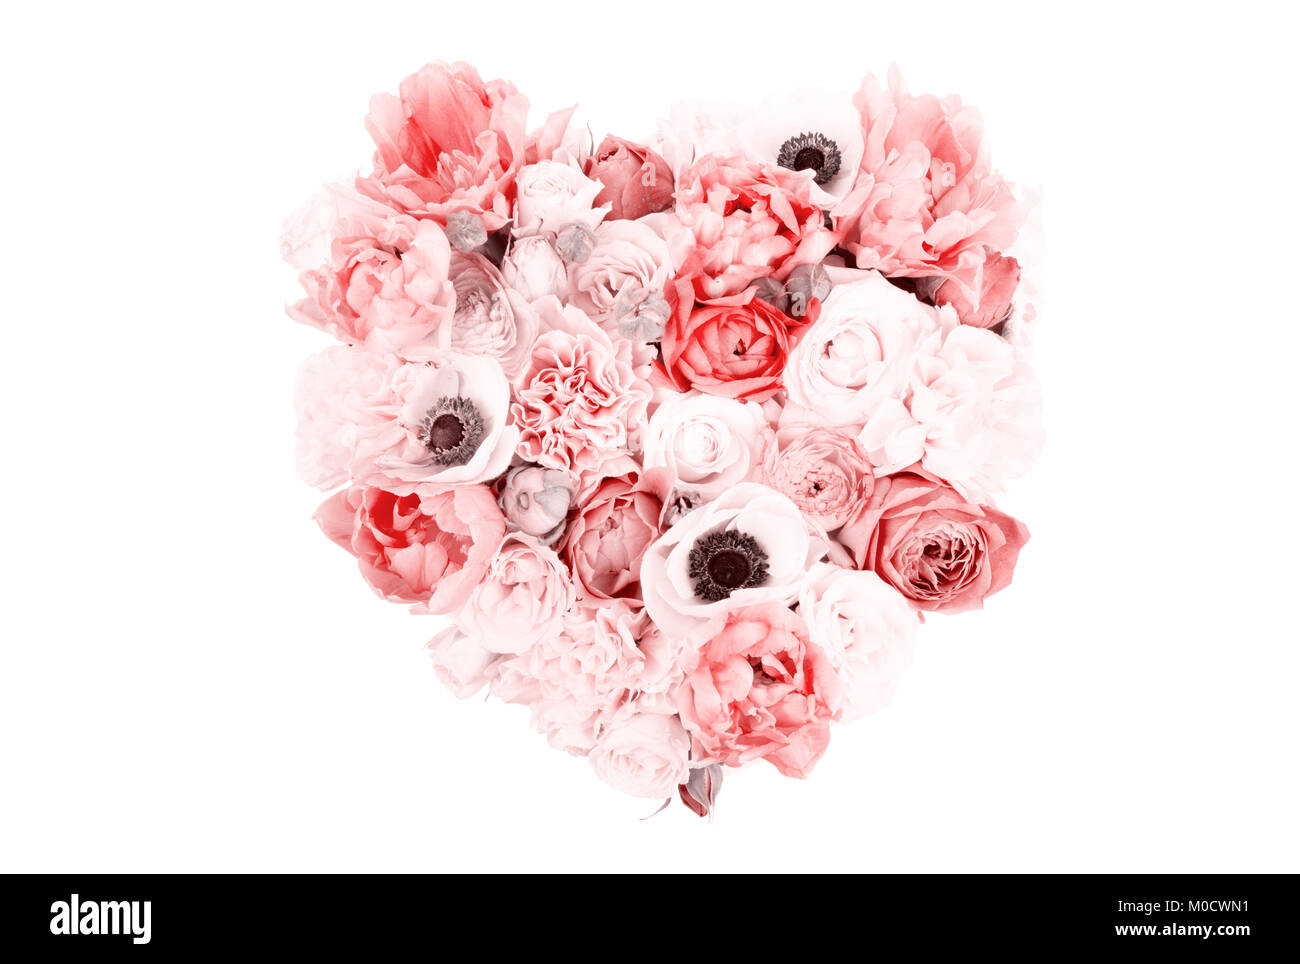 Bouquet de flores en forma de corazón aislado sobre fondo blanco. Foto de stock